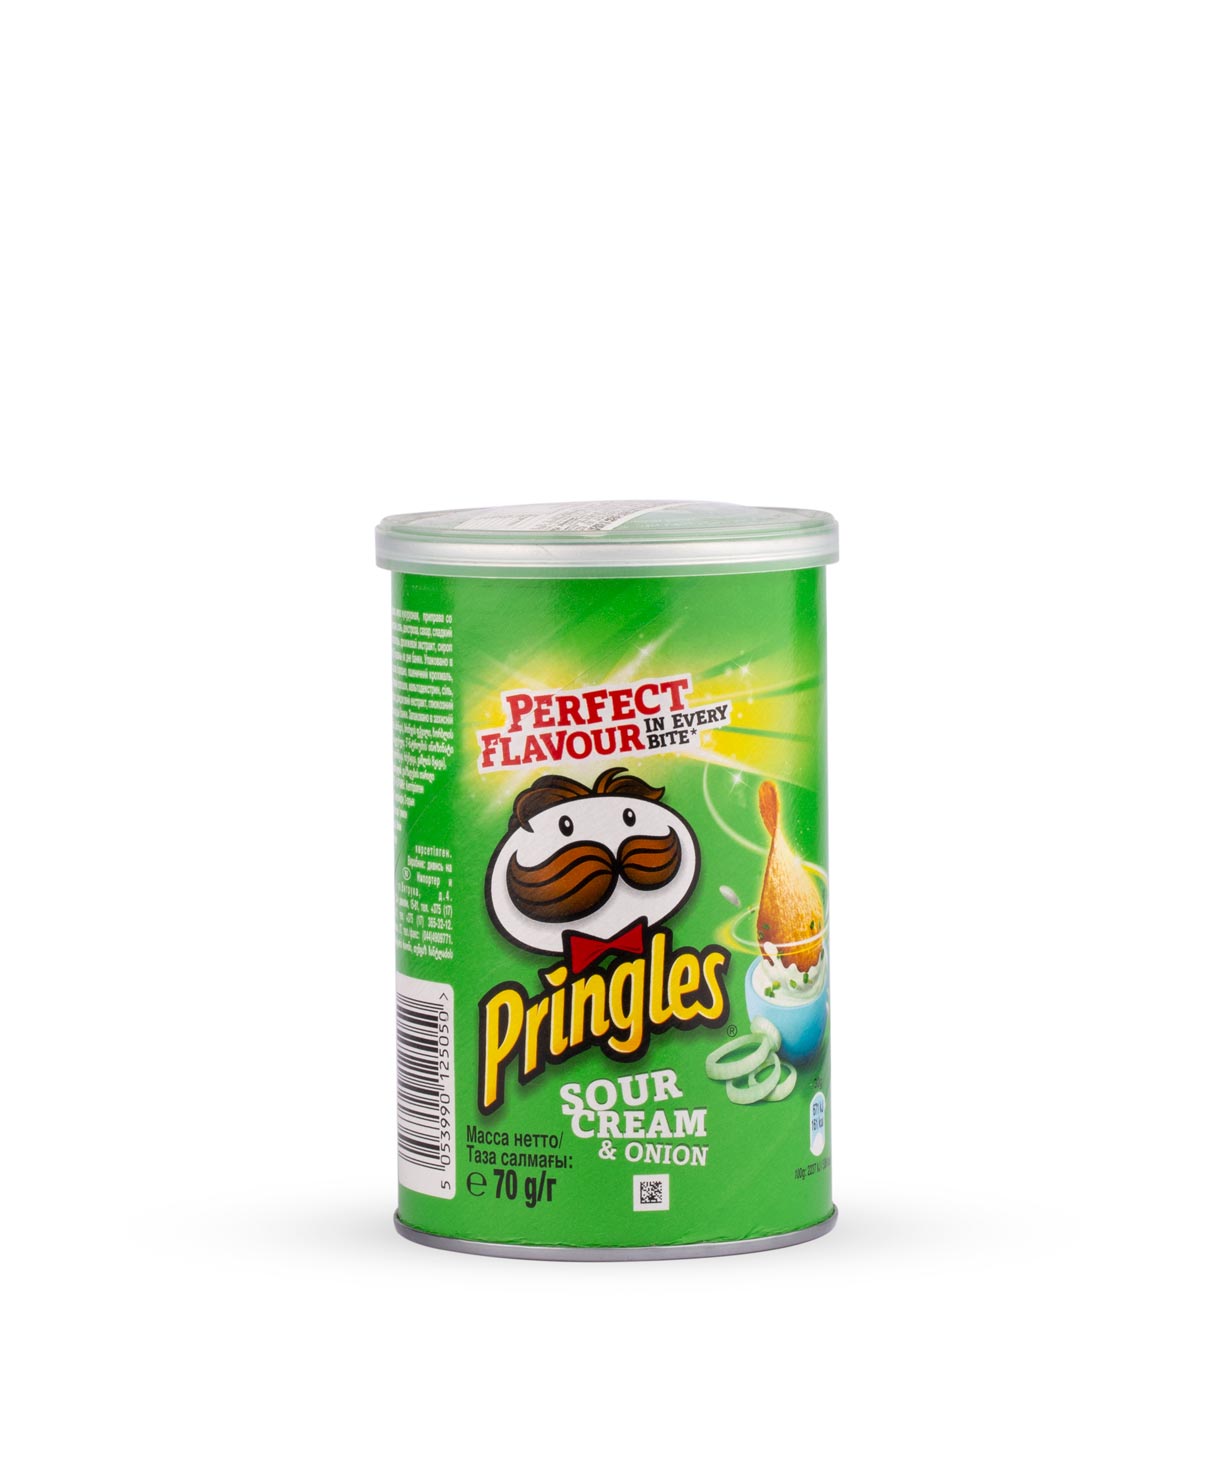 Չիպս «Pringles» թթվասեր, սոխ 70գ